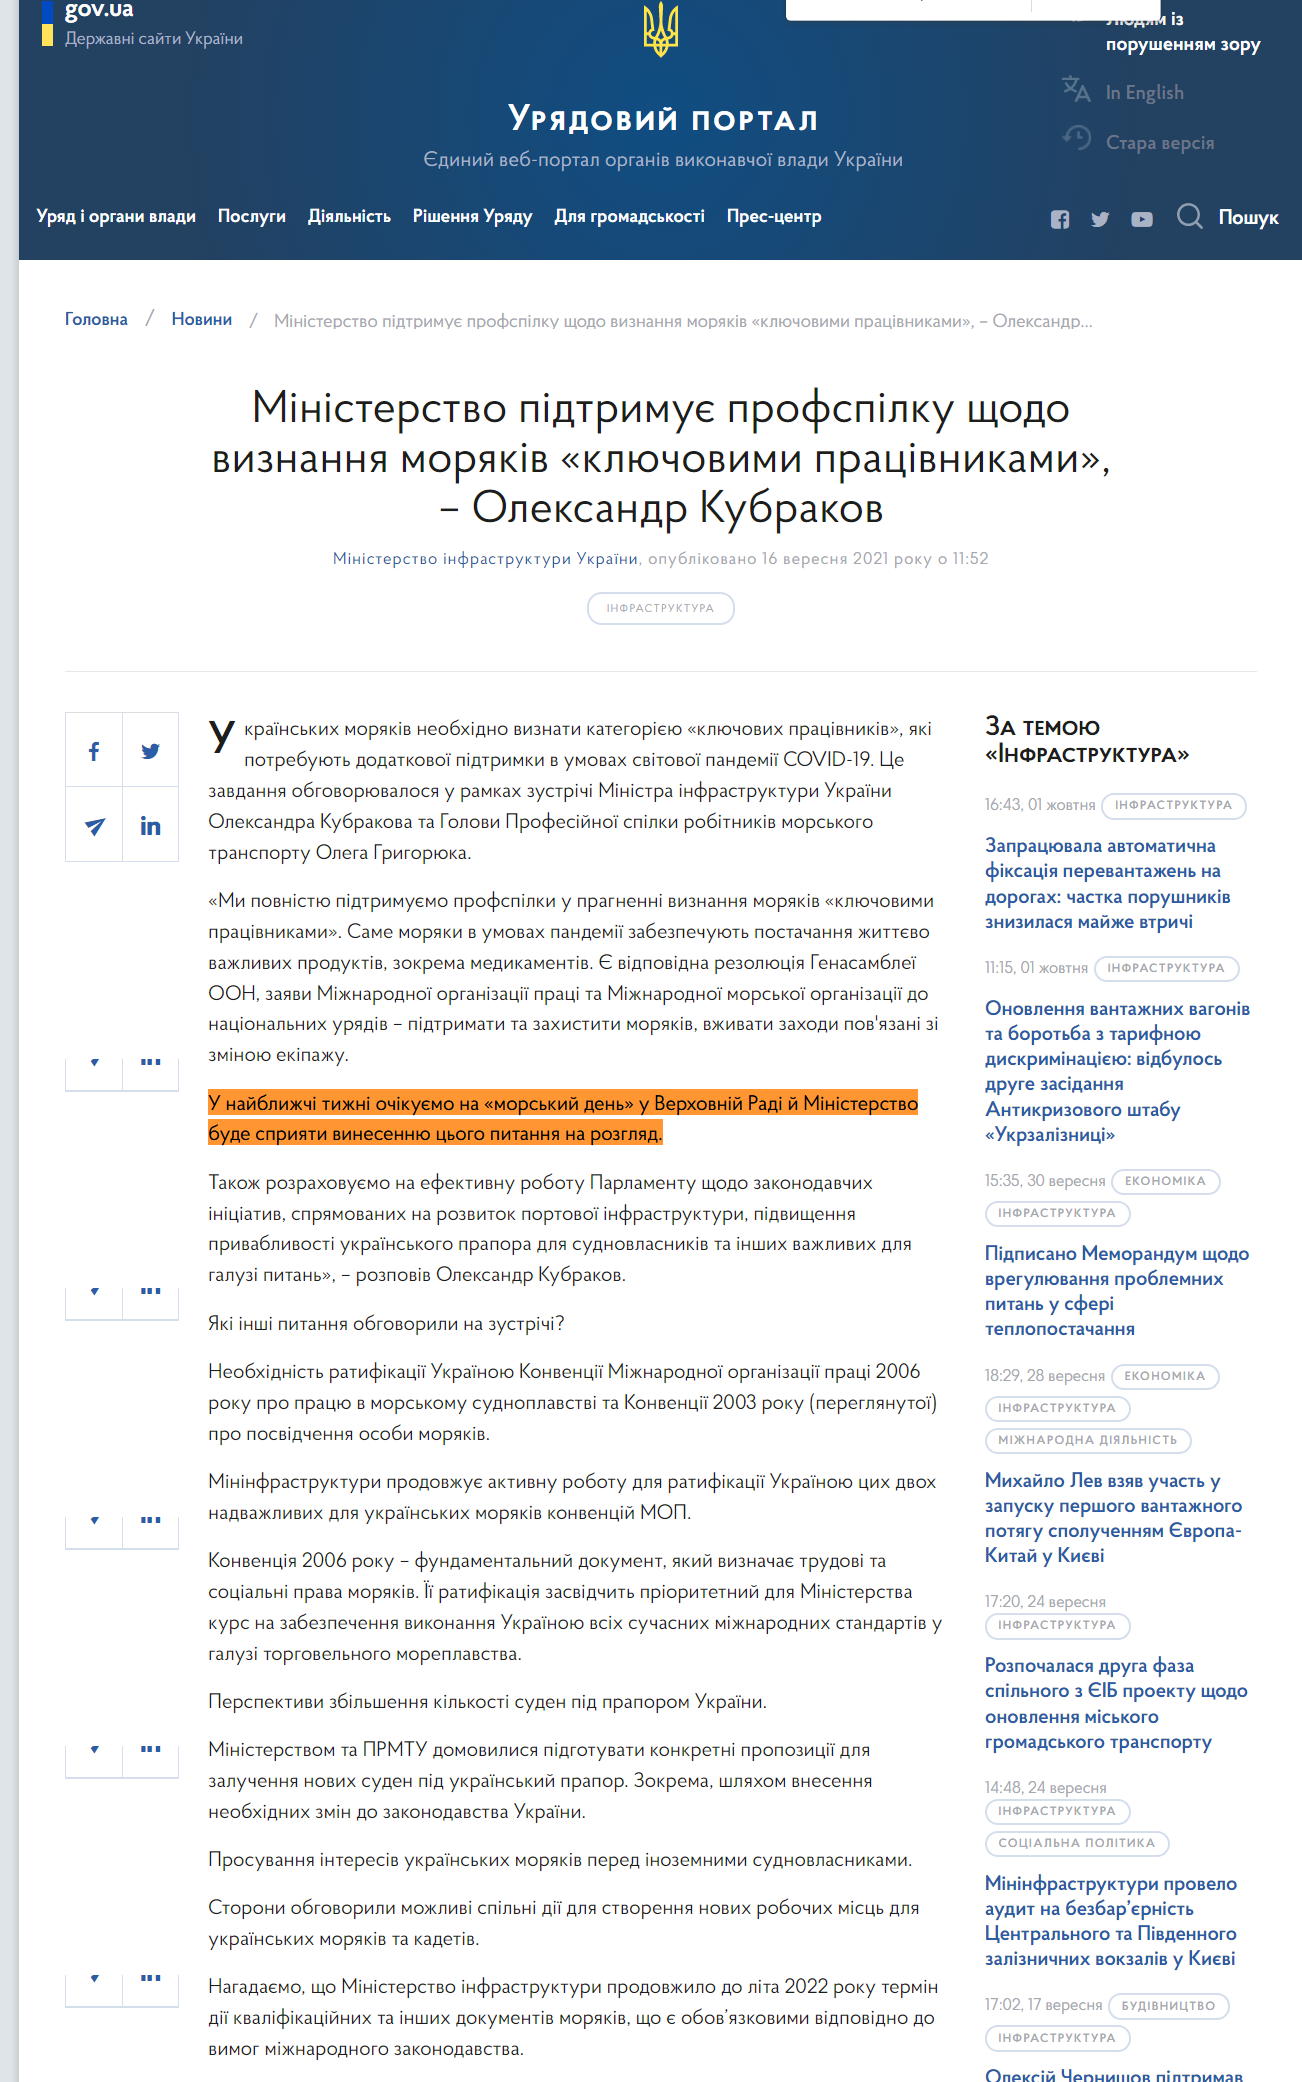 https://www.kmu.gov.ua/news/ministerstvo-pidtrimuye-profspilku-shchodo-viznannya-moryakiv-klyuchovimi-pracivnikami-oleksandr-kubrakov